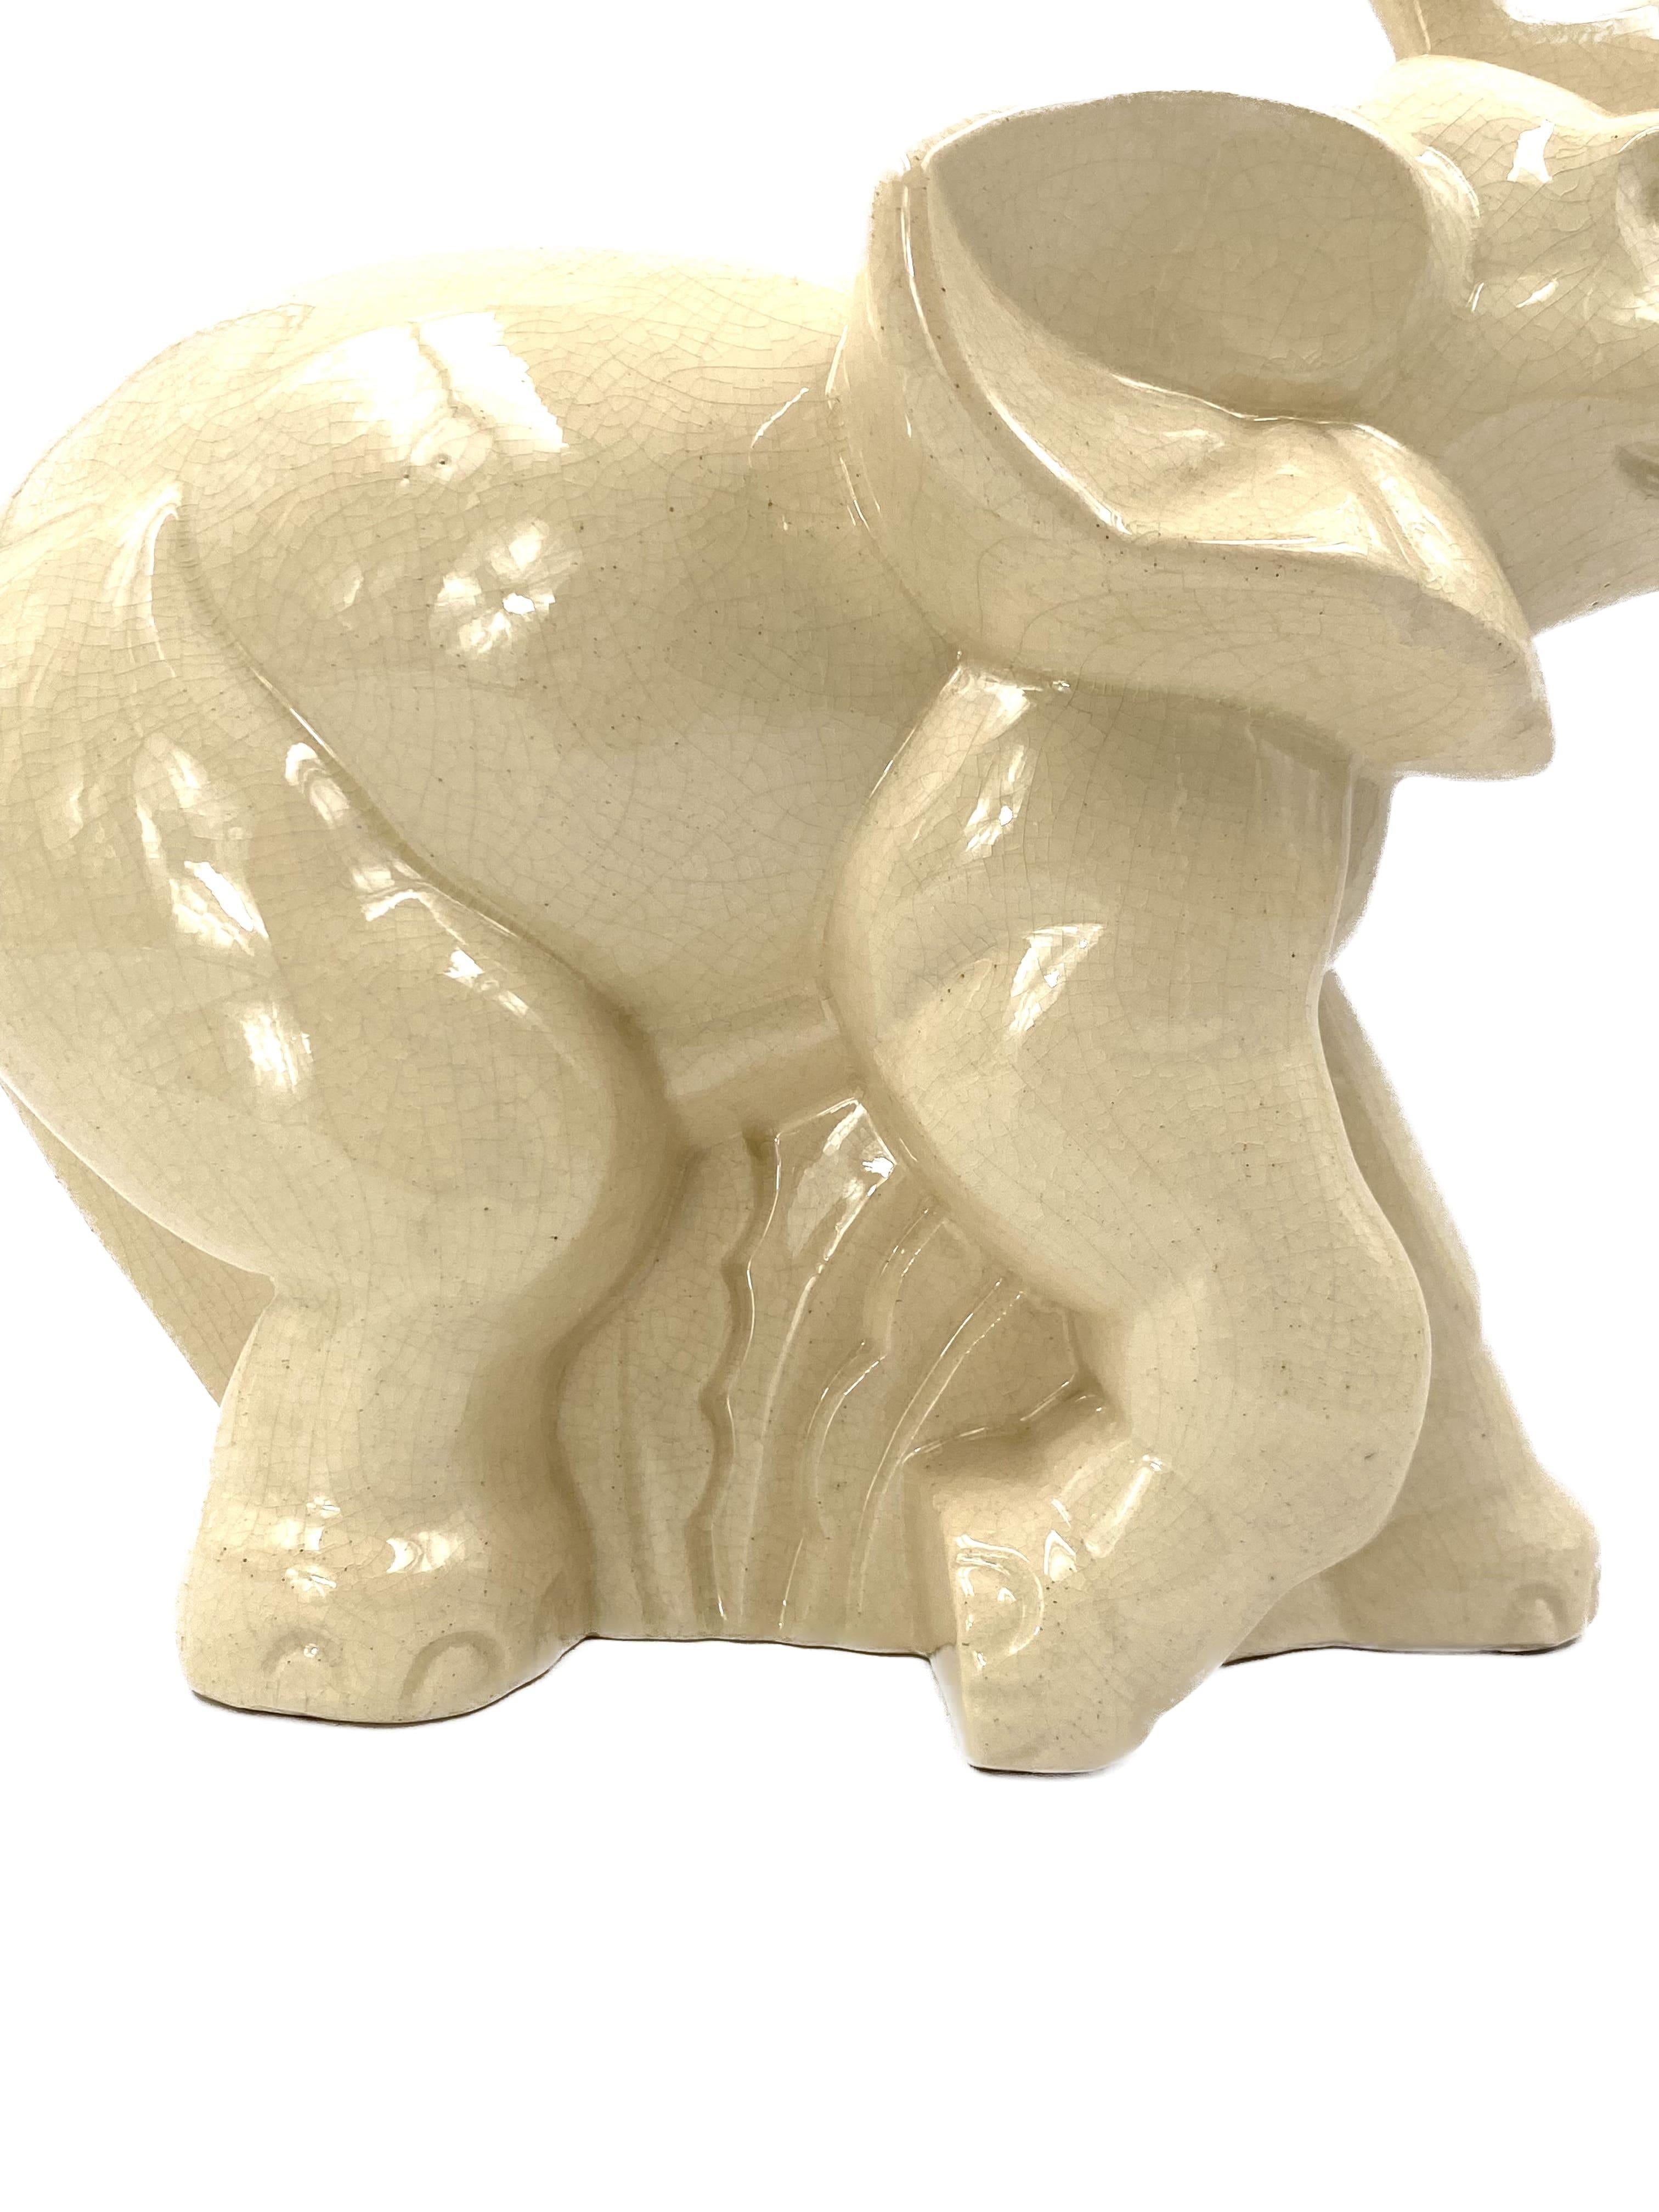 Elephant Craquelé Glazed Earthenware Art Deco Sculpture, Fontinelle Belgium 1940 For Sale 2